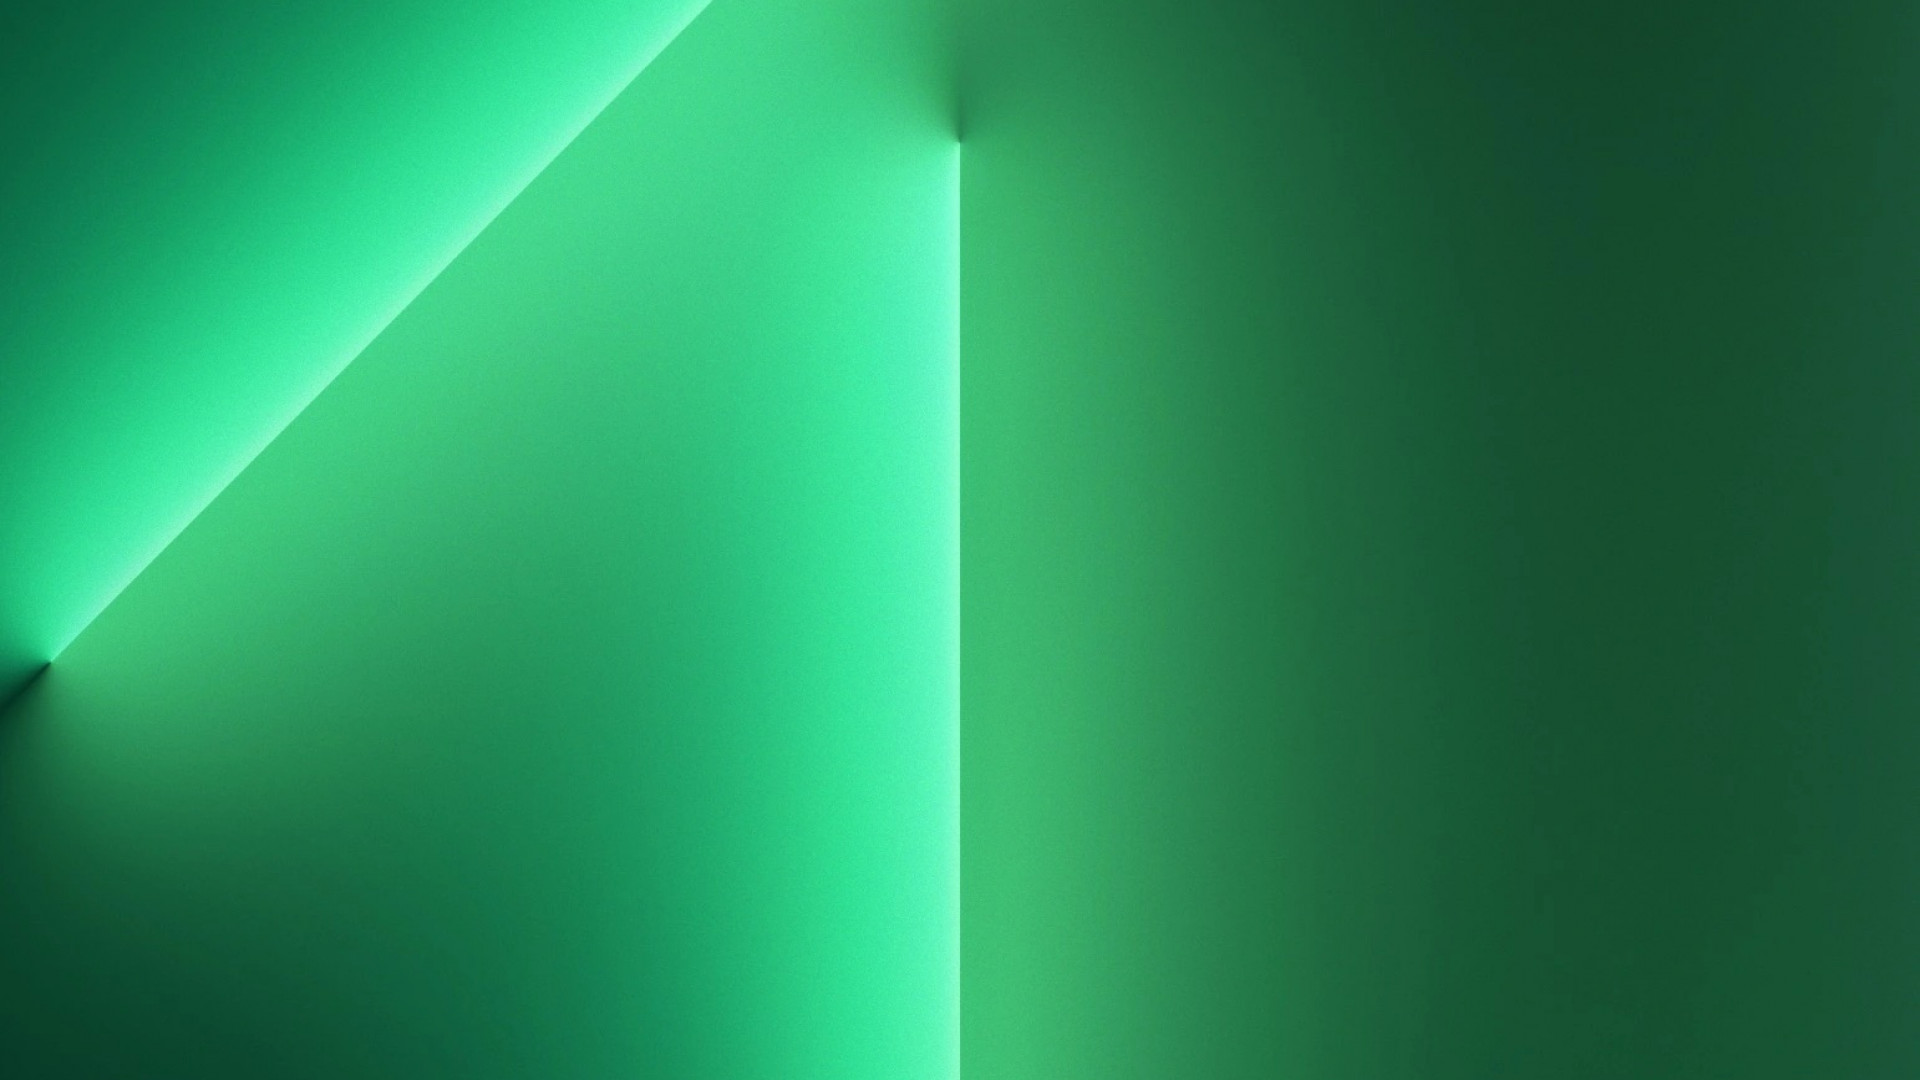 Wallpaper iPhone 13 Pro, Alpine Green sẽ là sự lựa chọn hoàn hảo cho tín đồ công nghệ yêu thích smartphone. Với gam màu xanh tươi nhưng không quá nổi bật, tạo cảm giác thanh lịch và tinh tế. Hãy tải ngay để trang trí màn hình cho chiếc điện thoại thông minh của bạn.